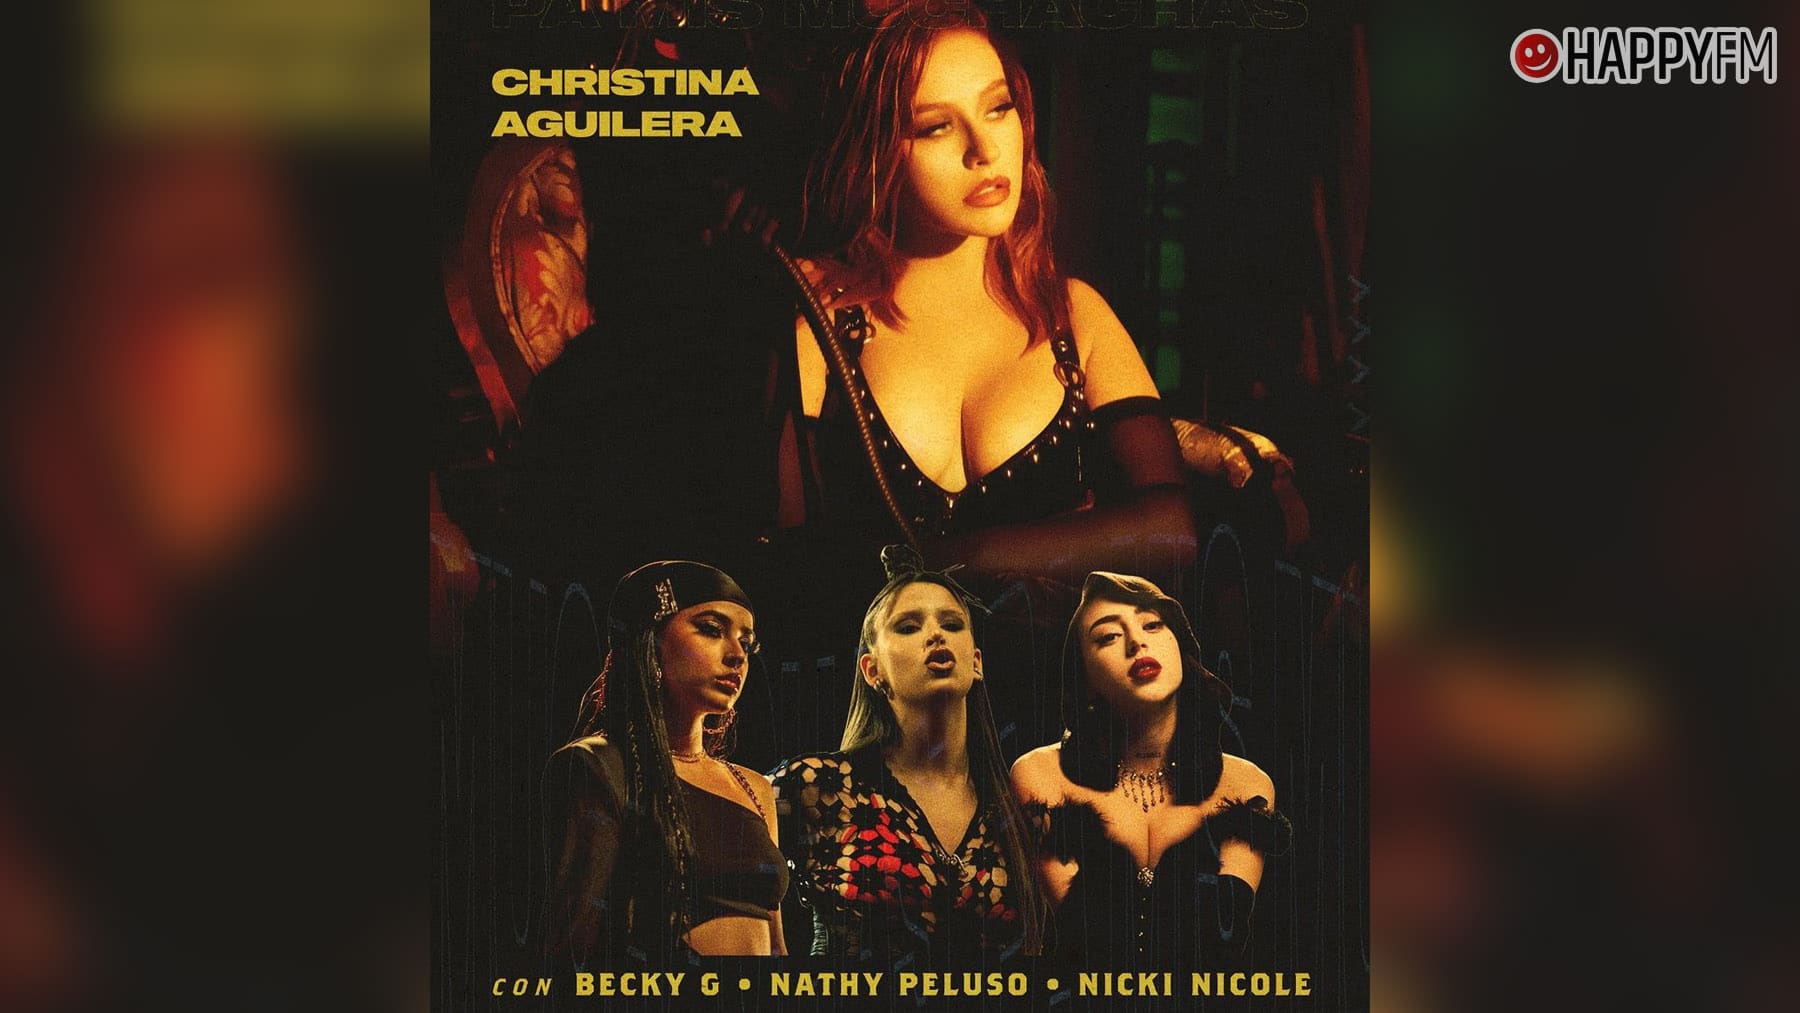 ‘Pa’ mis muchachas’, de Christina Aguilera, Nathy Peluso, Becky G y Nicki Nicole: letra y vídeo